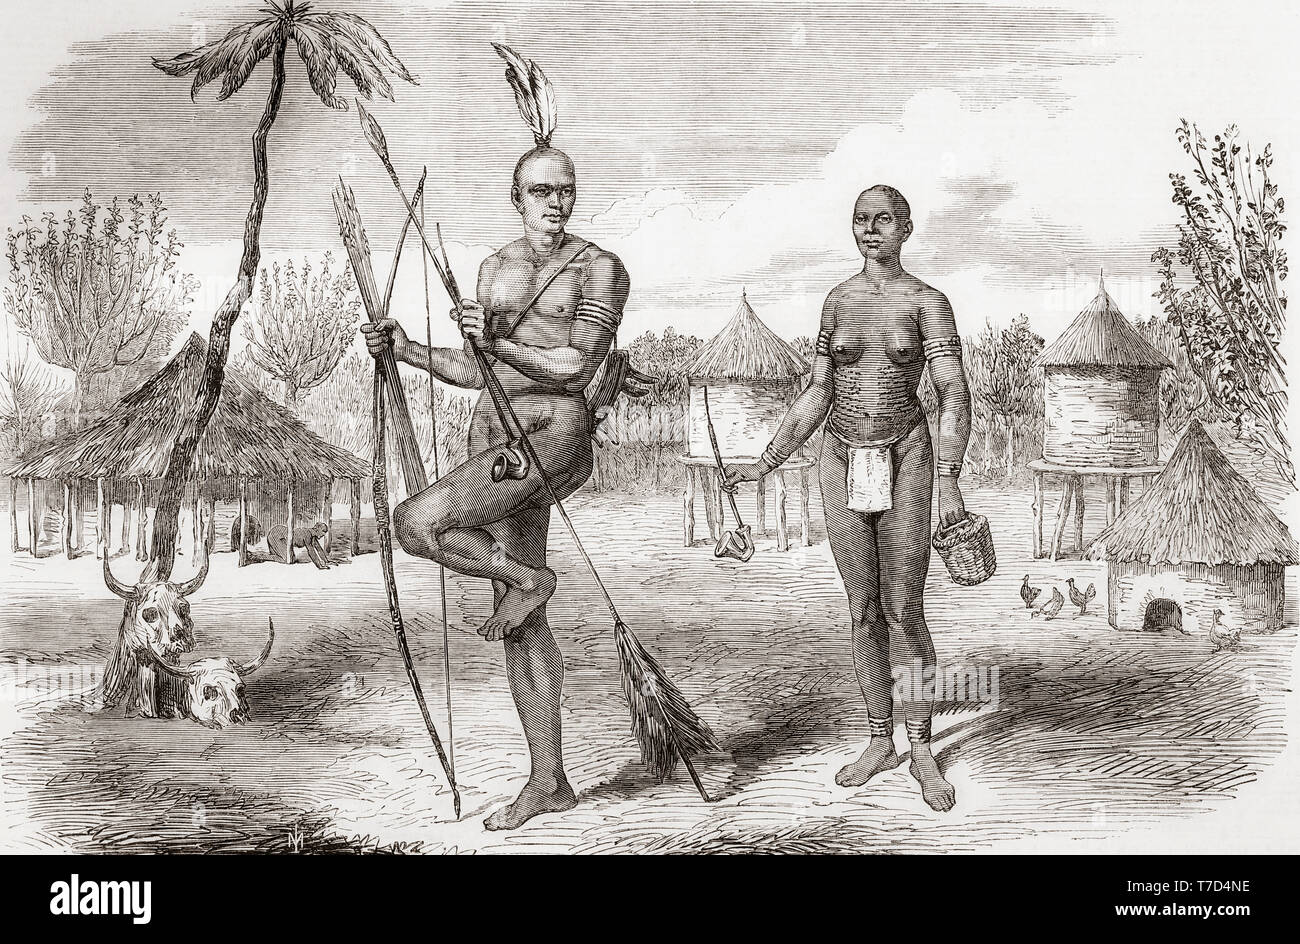 Homestead dei nativi di Gondokoro, sud Sudan, Africa centrale. Dal Illustrated London News, pubblicato 1865. Foto Stock